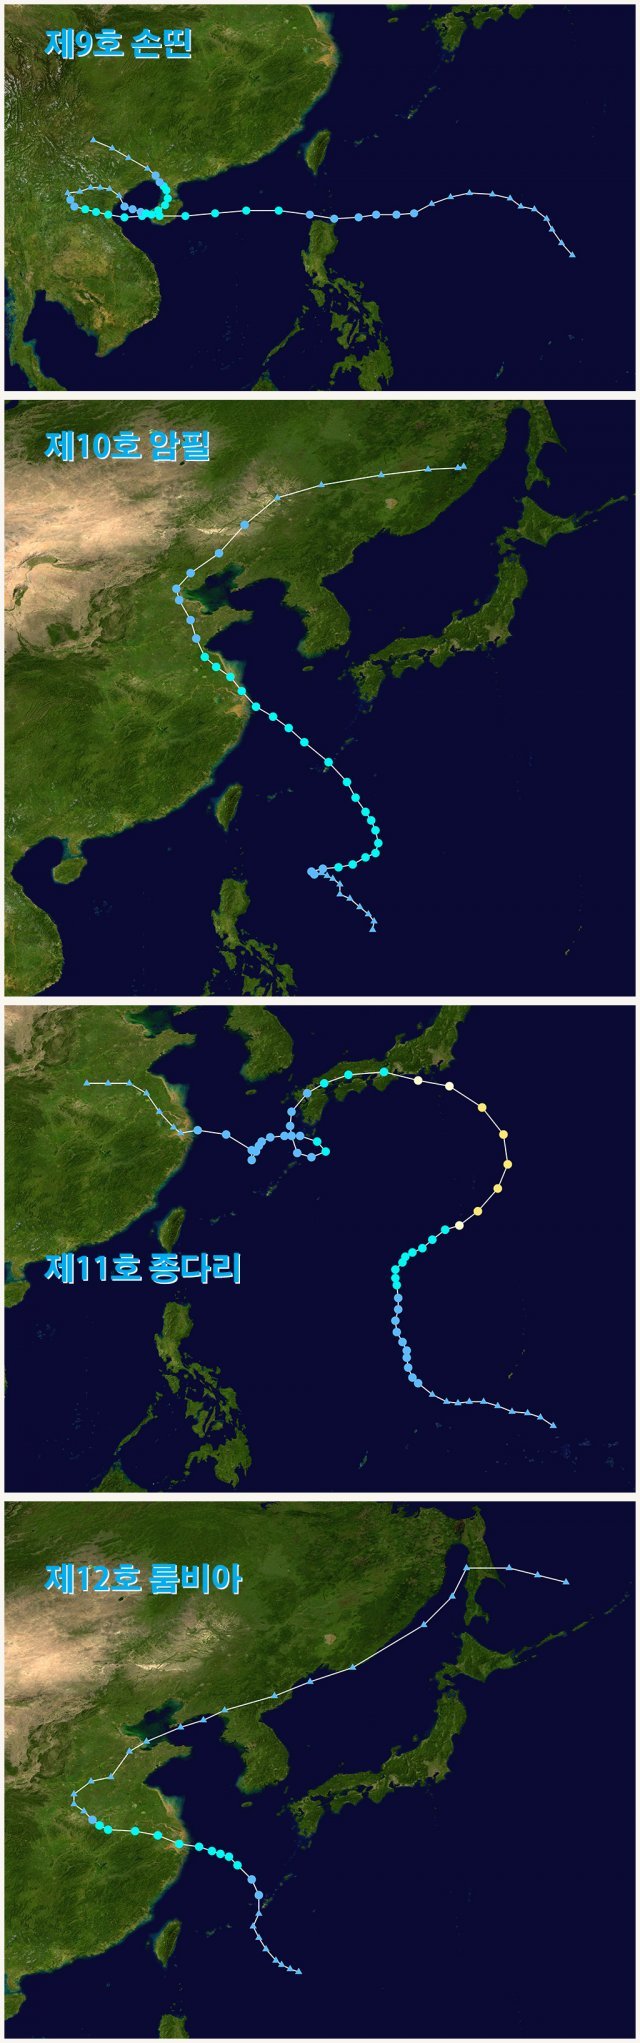 2018년 발생한 태풍 9~12호의 비정상적인 경로. 기상청